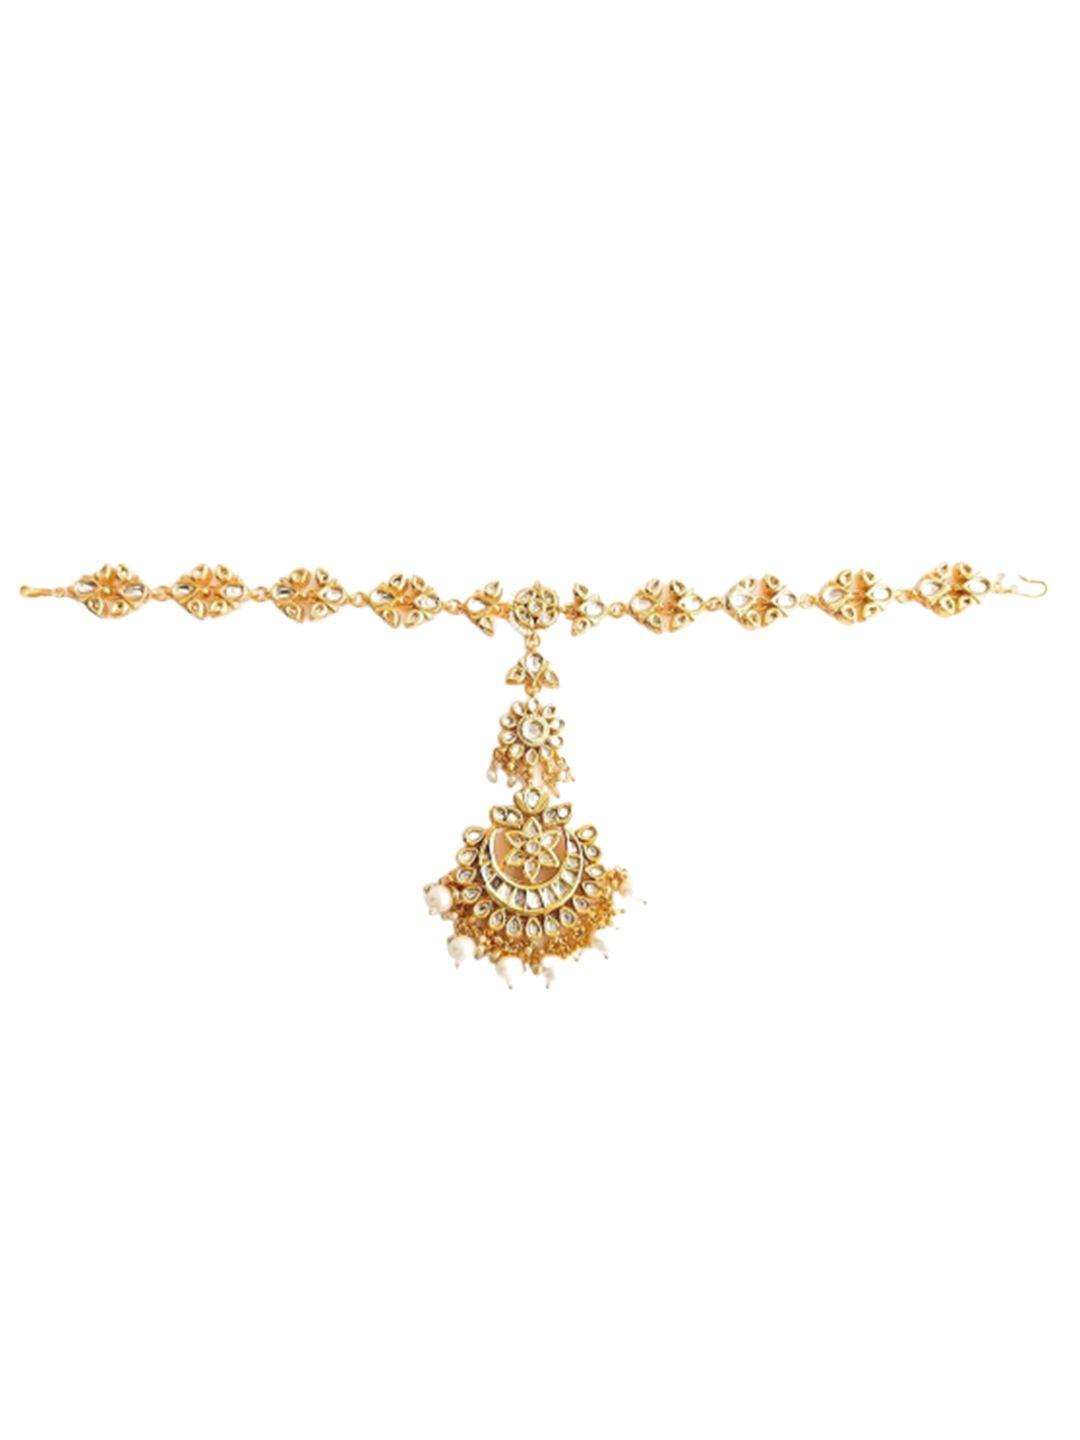 pihtara jewels gold-plated kundan-studded & beaded  matha patti